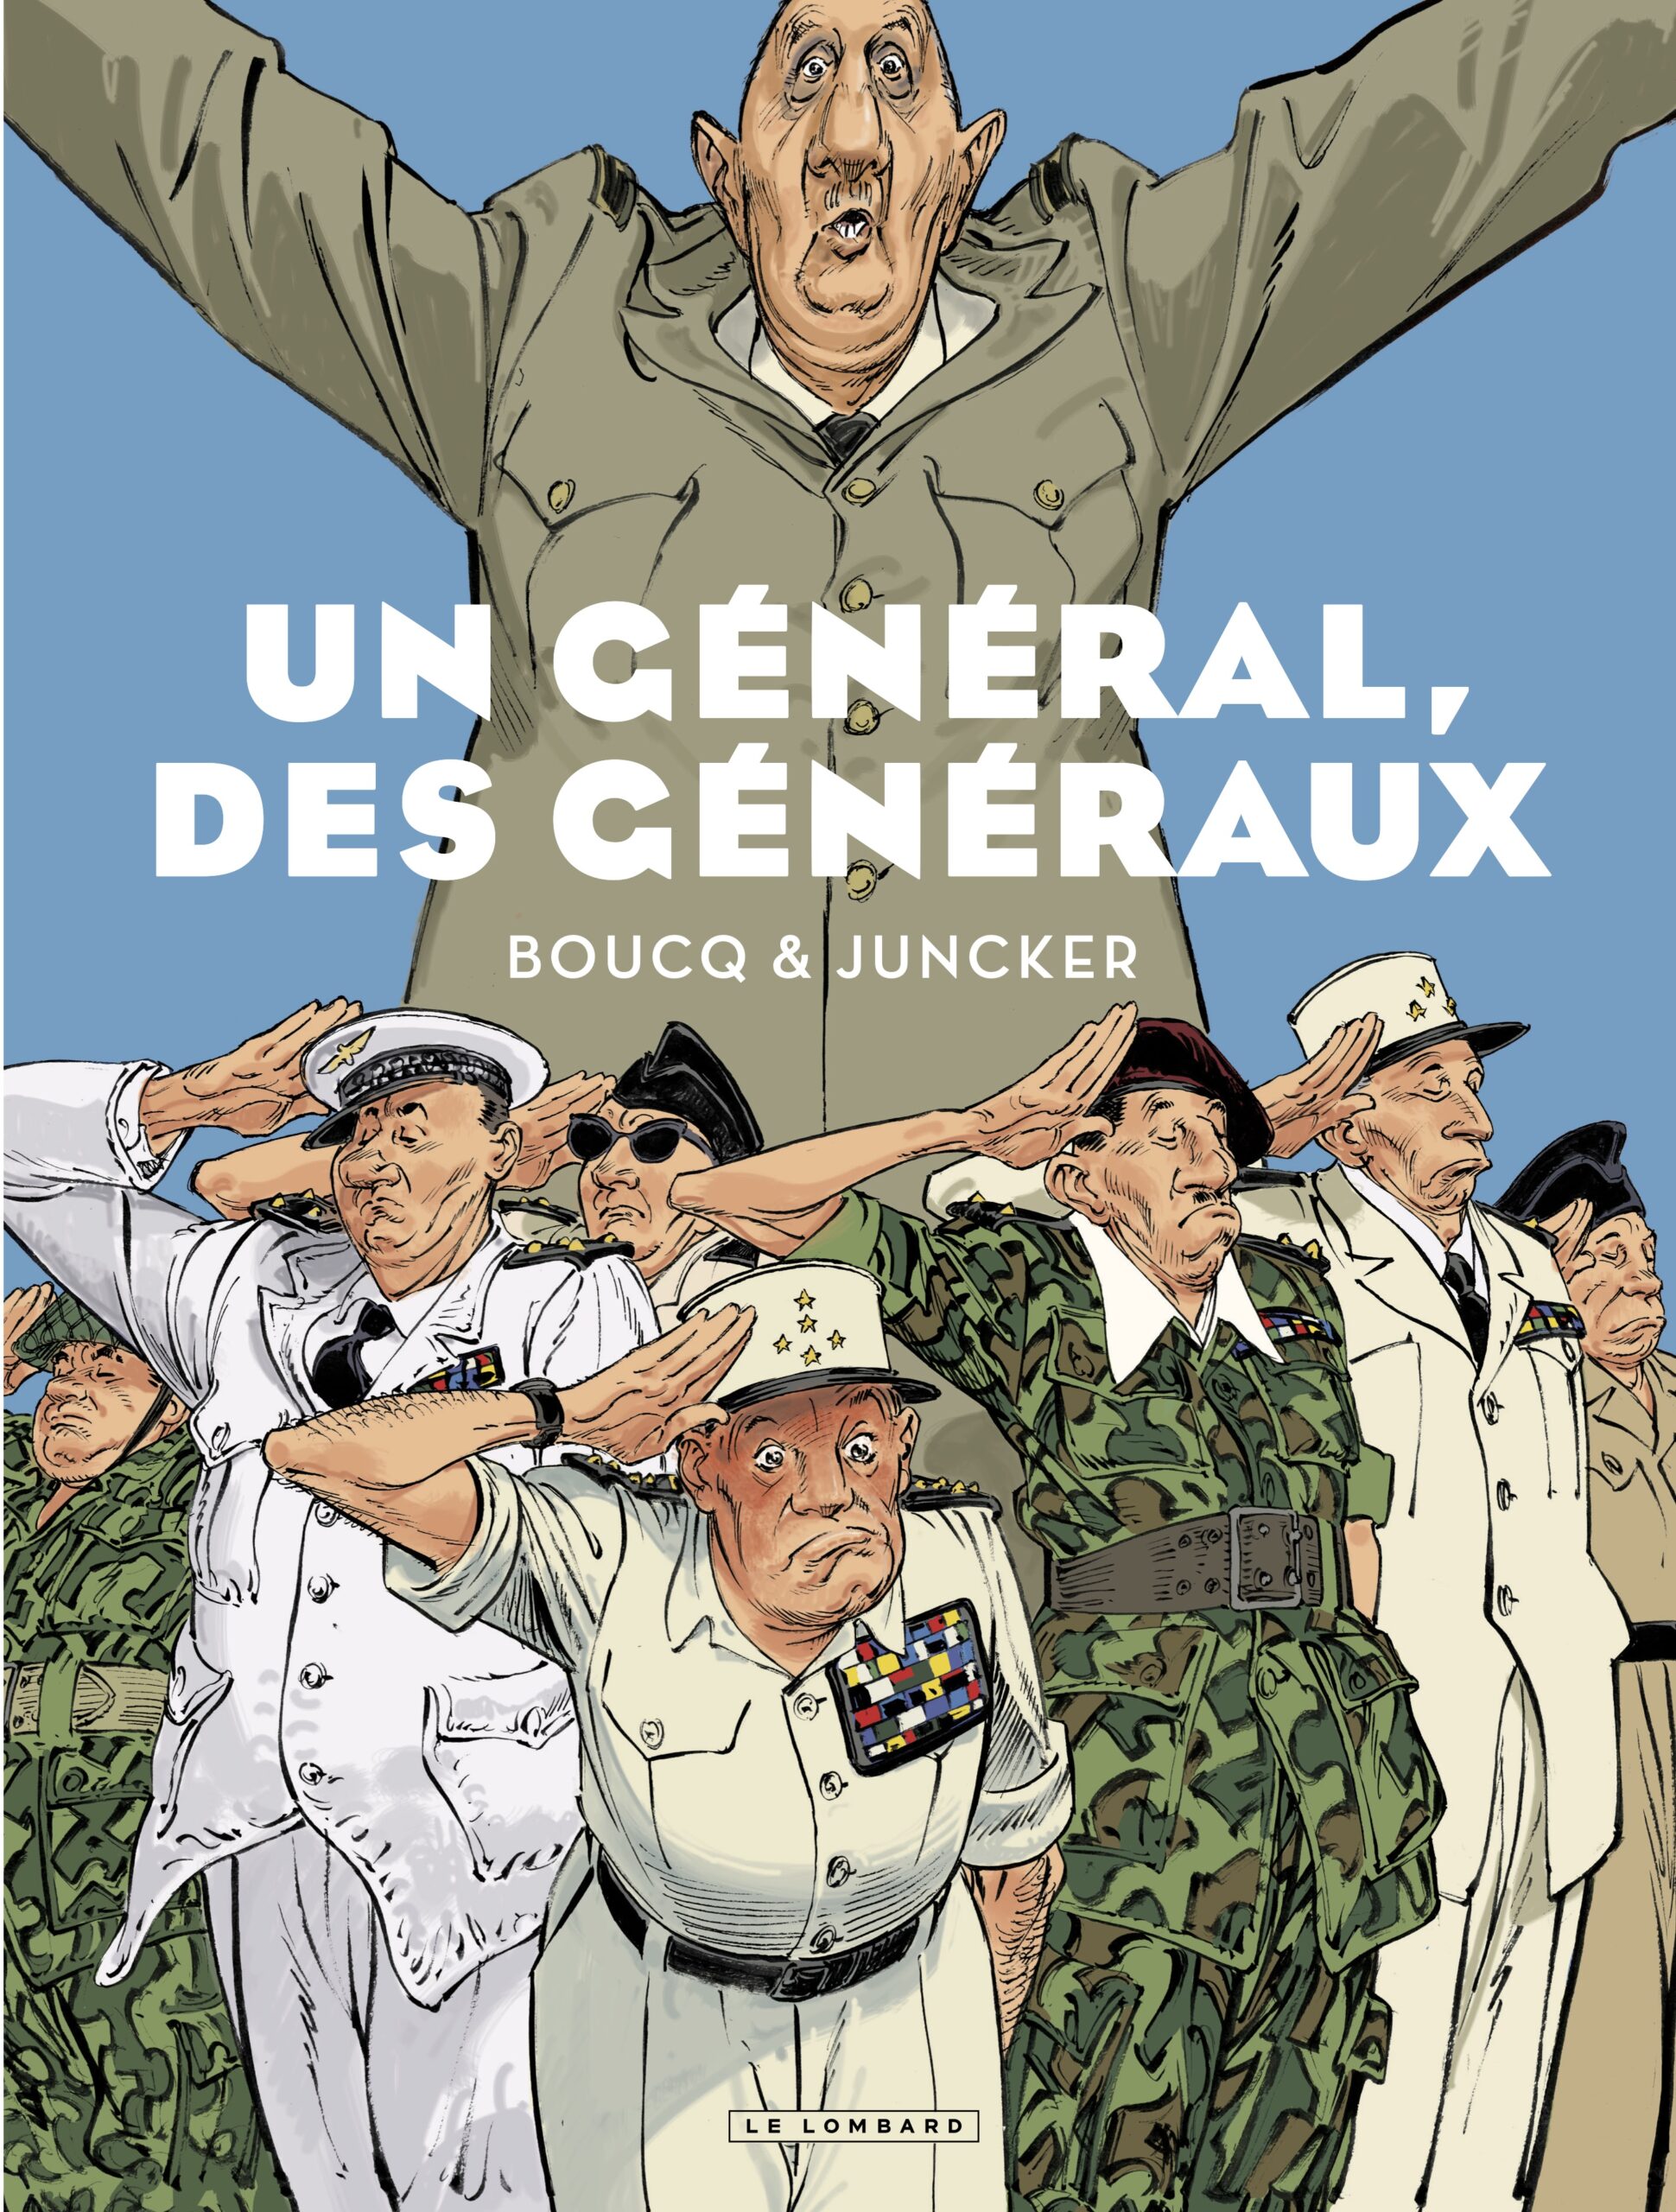 Un général, des généraux : les coulisses du putsch d'Alger du 13 mai 1958 et le retour de de Gaulle sur un air d'opéra-bouffe – Cases d'histoire